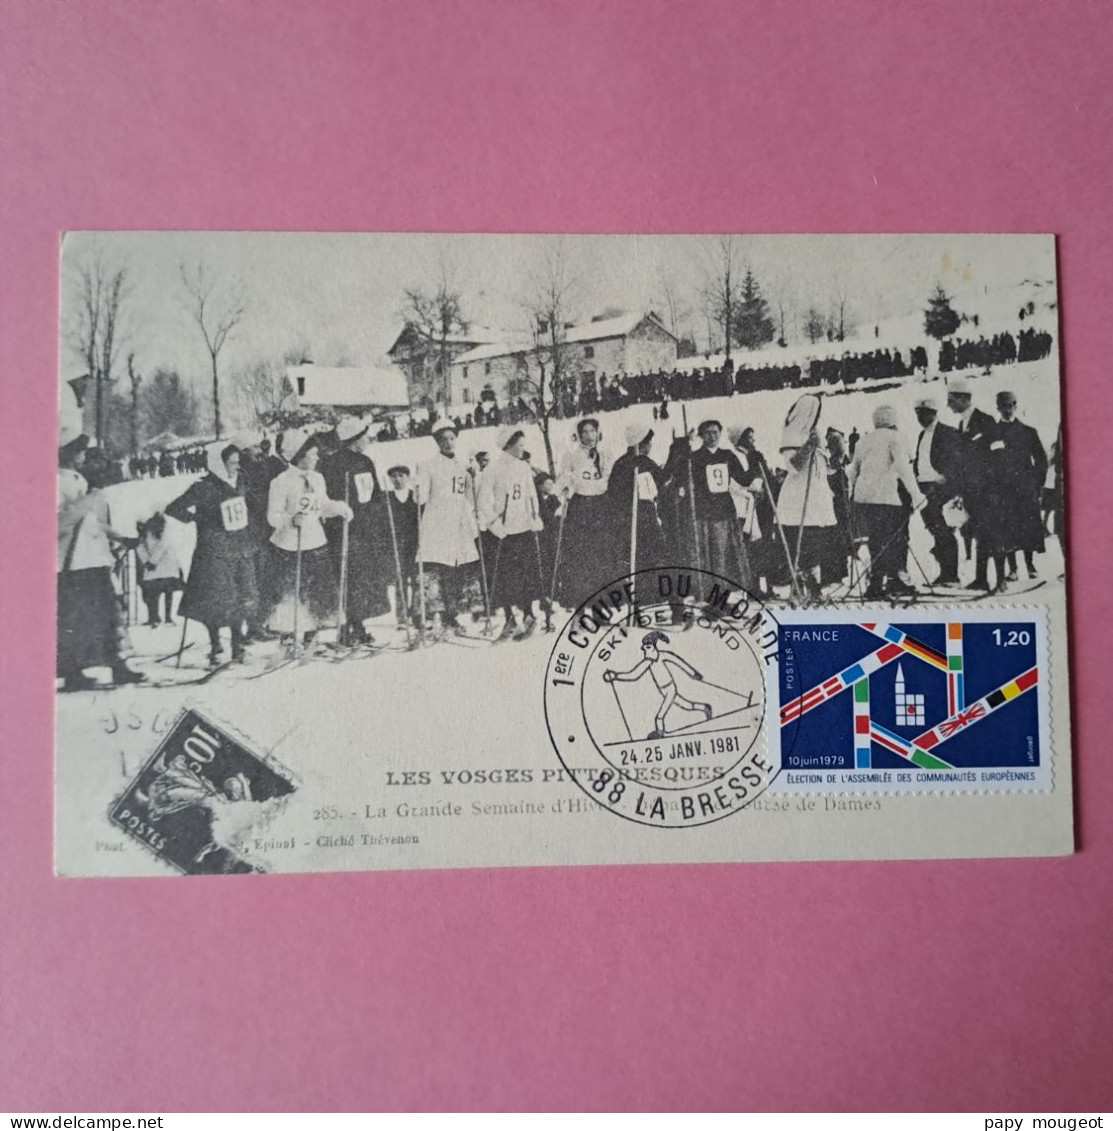 1ère Coupe Du Monde Ski De Fond - La Bresse 88 24.25 Janvier 1981 - Temporary Postmarks